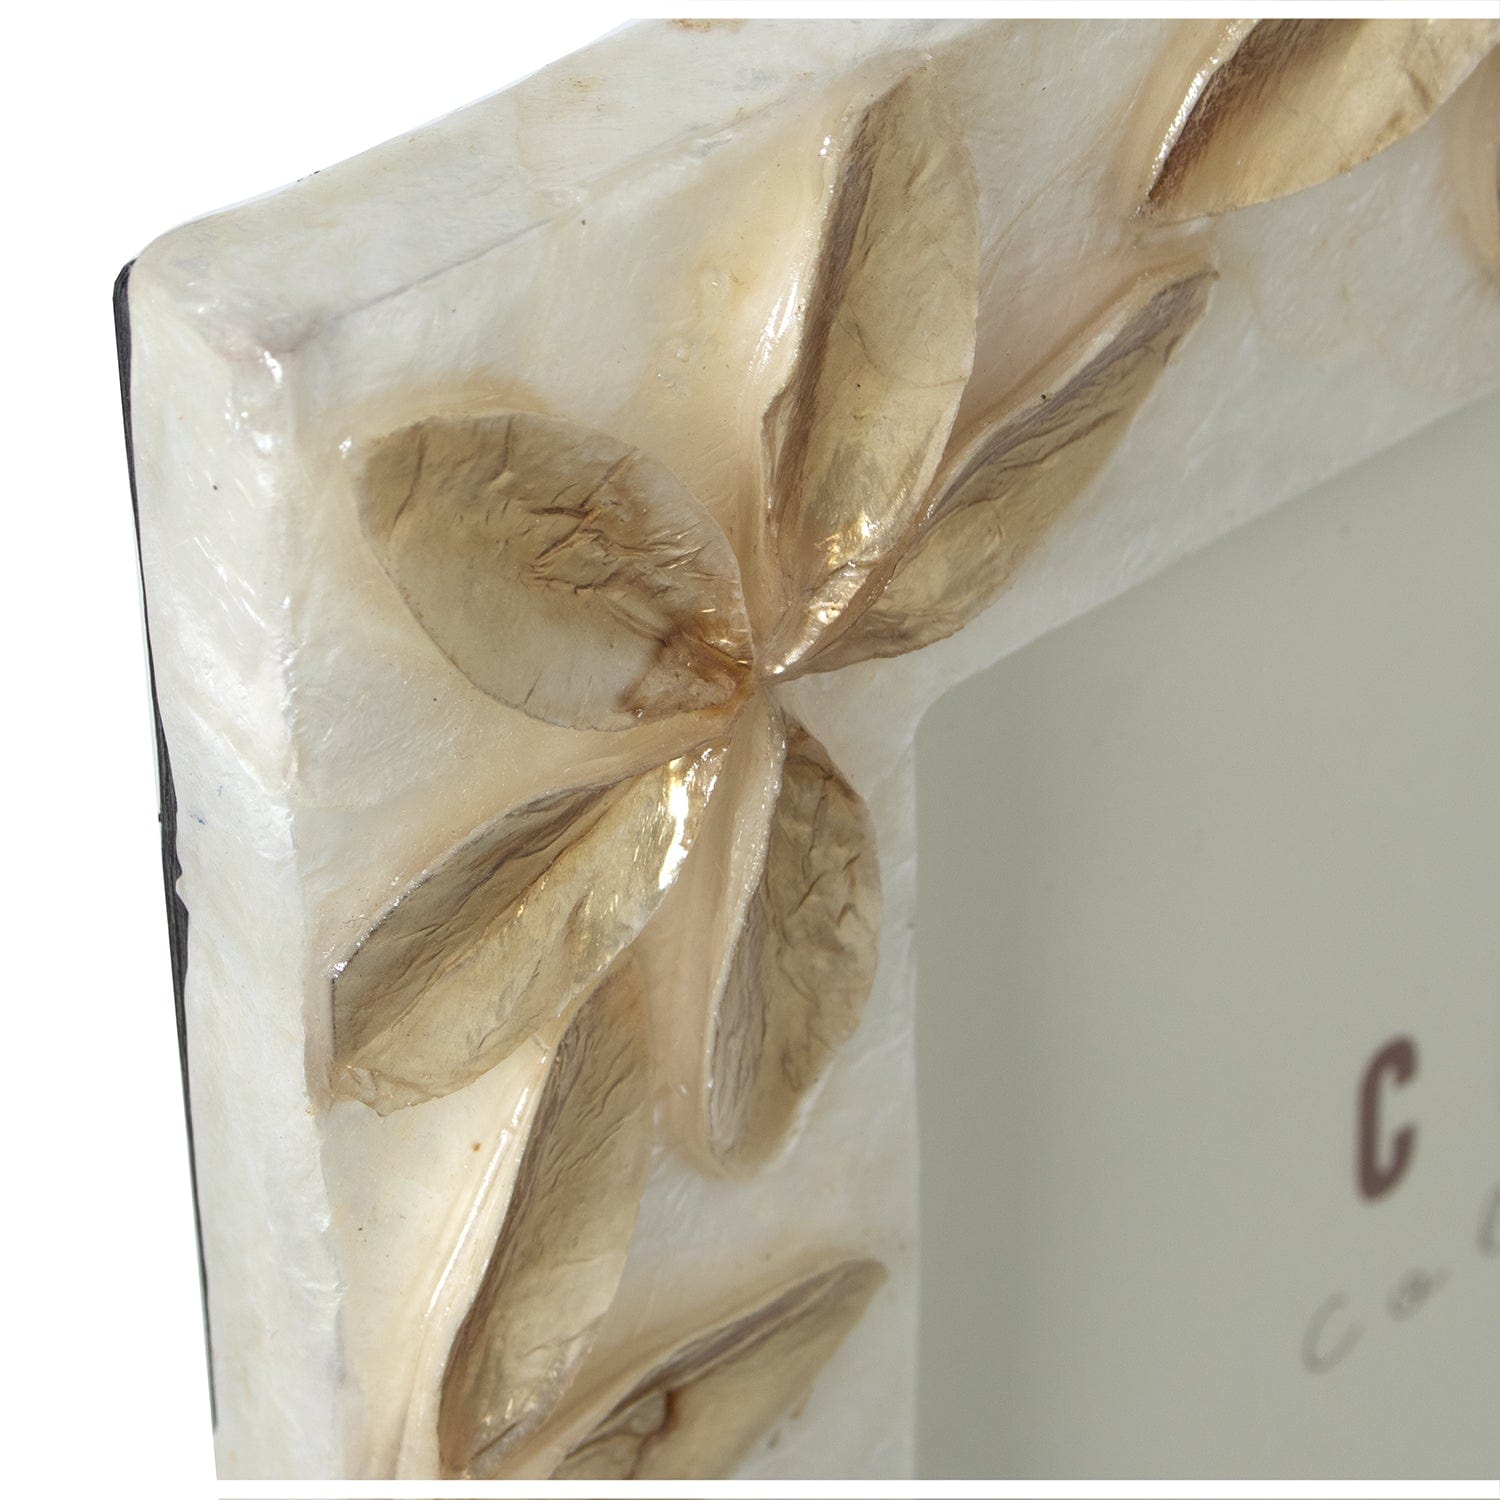 Dolcipensierigift Cornice portafoto bianco oro con decorazione luxury cerchi 20x25 cm